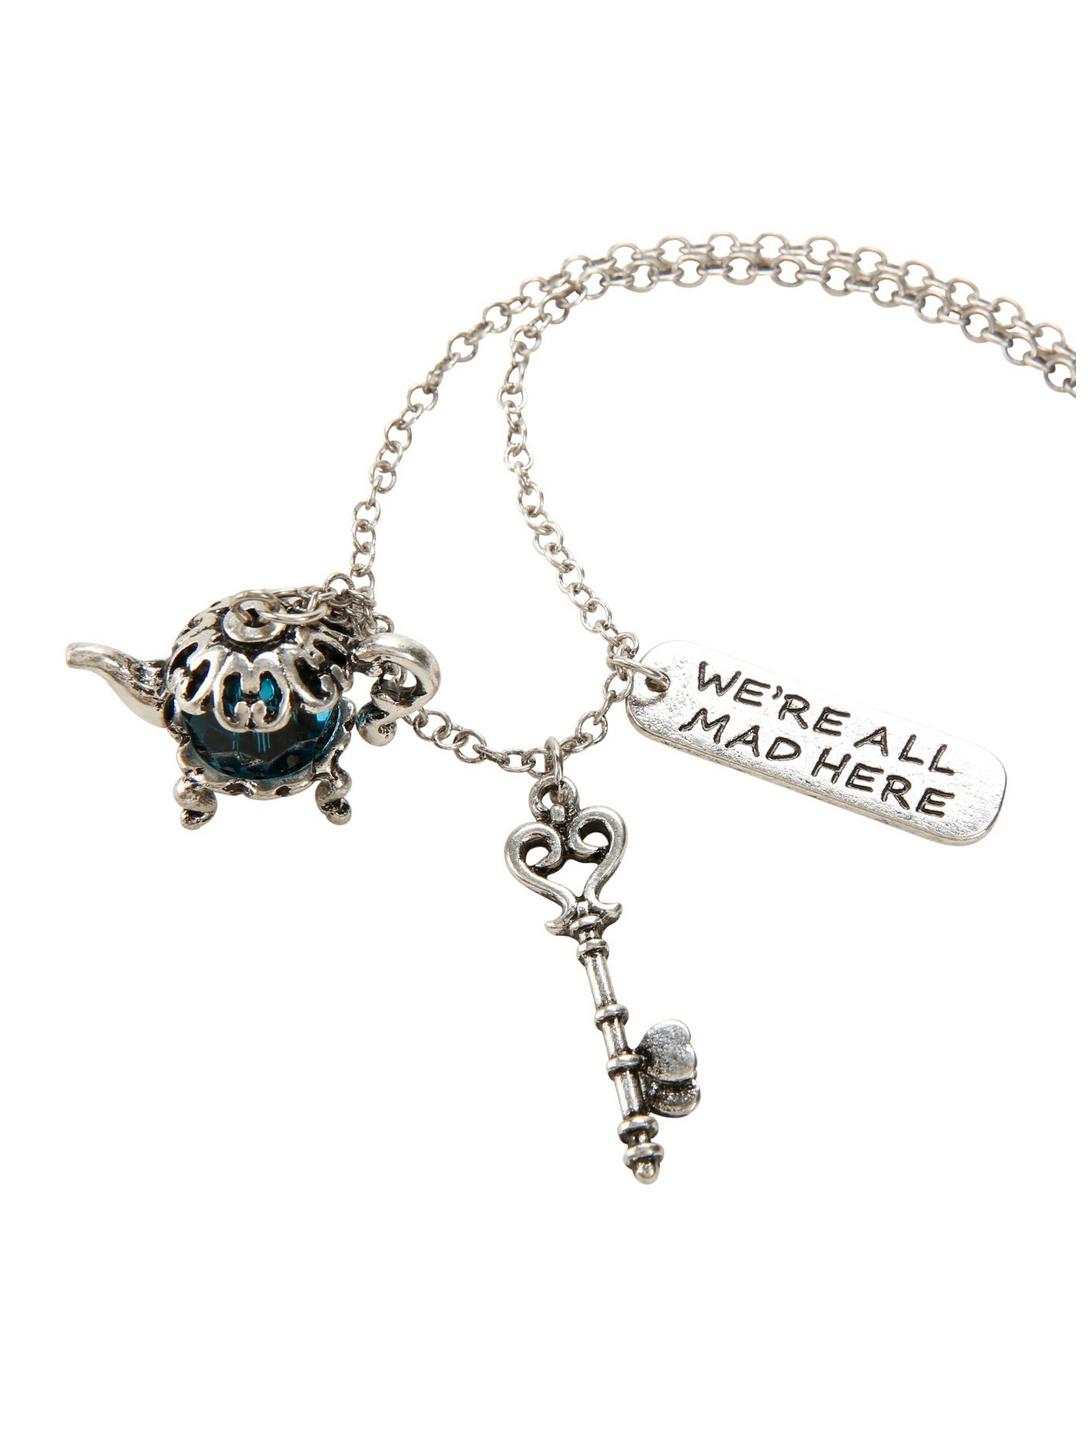 Blackheart Mad Tea & Key Necklace, , hi-res